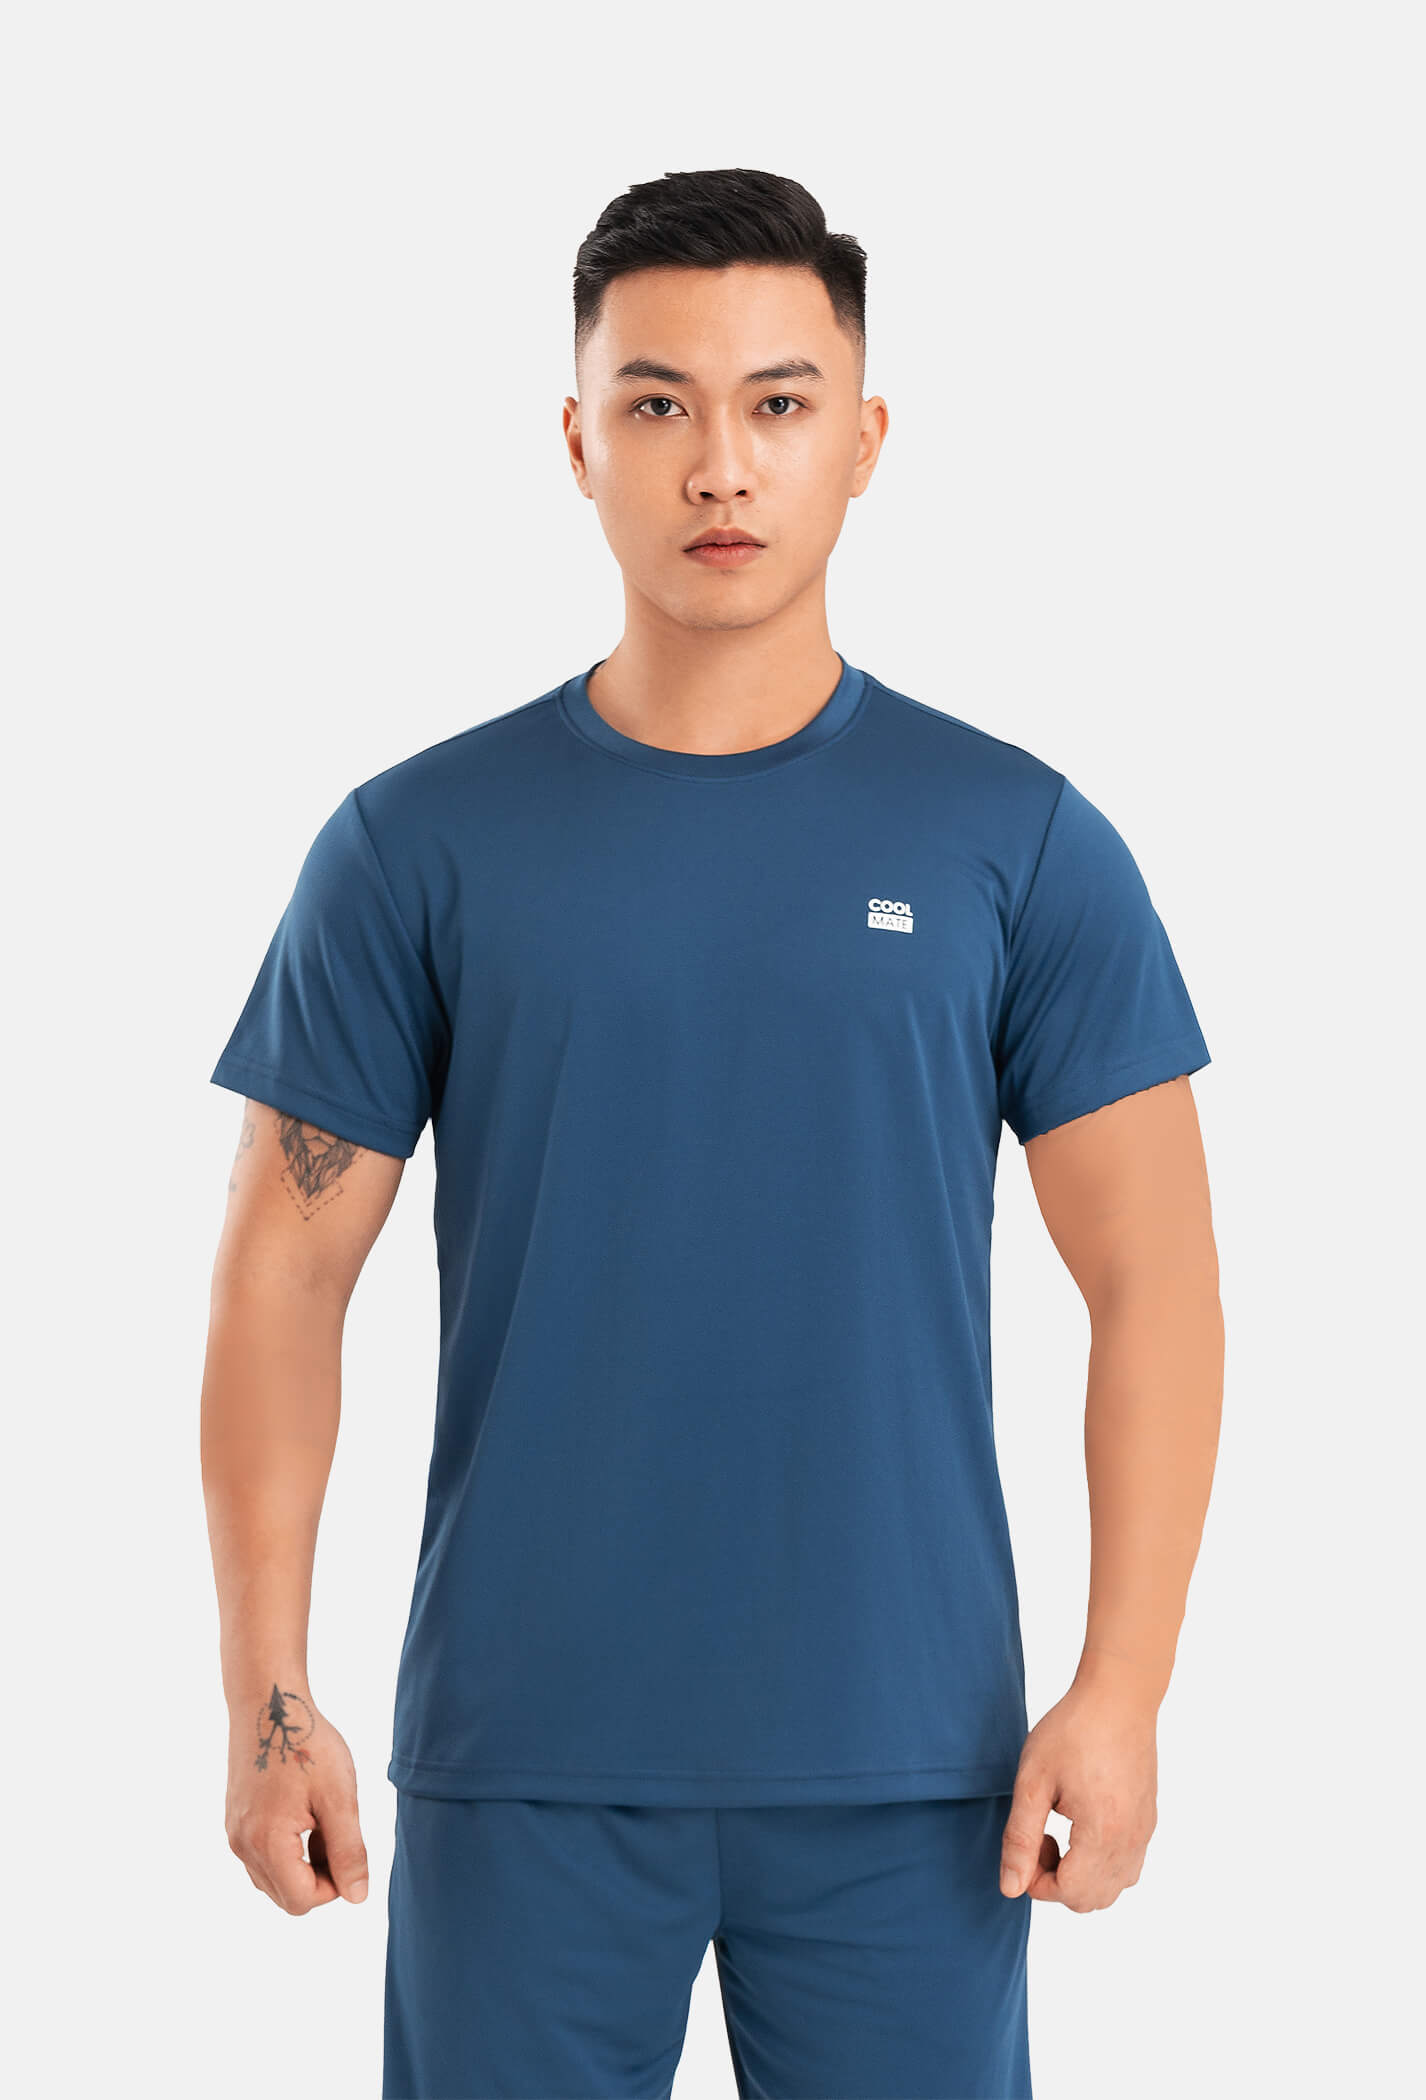 T-Shirt thể thao Promax-S1 xanh-aqua?color=cam